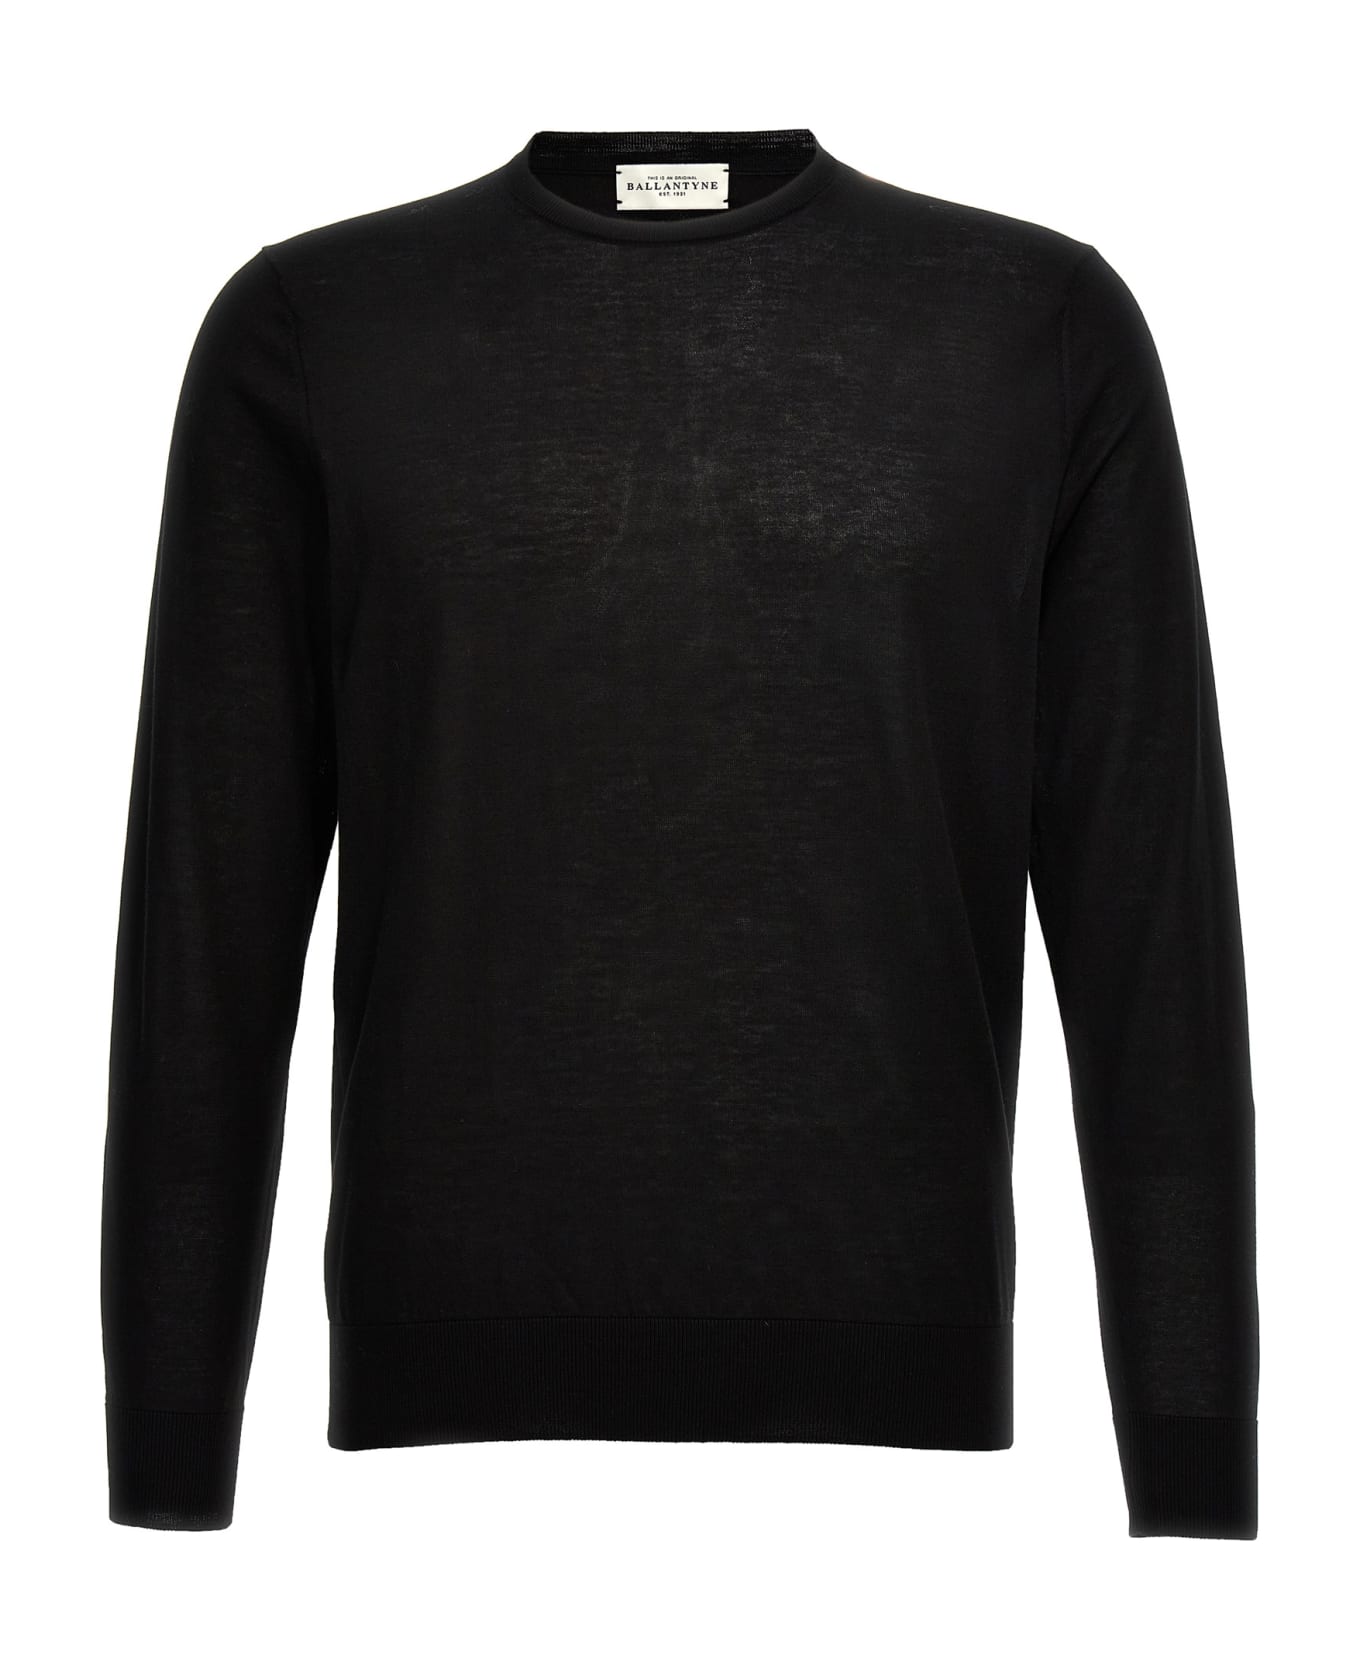 Ballantyne Cotton Sweater - Black   ニットウェア